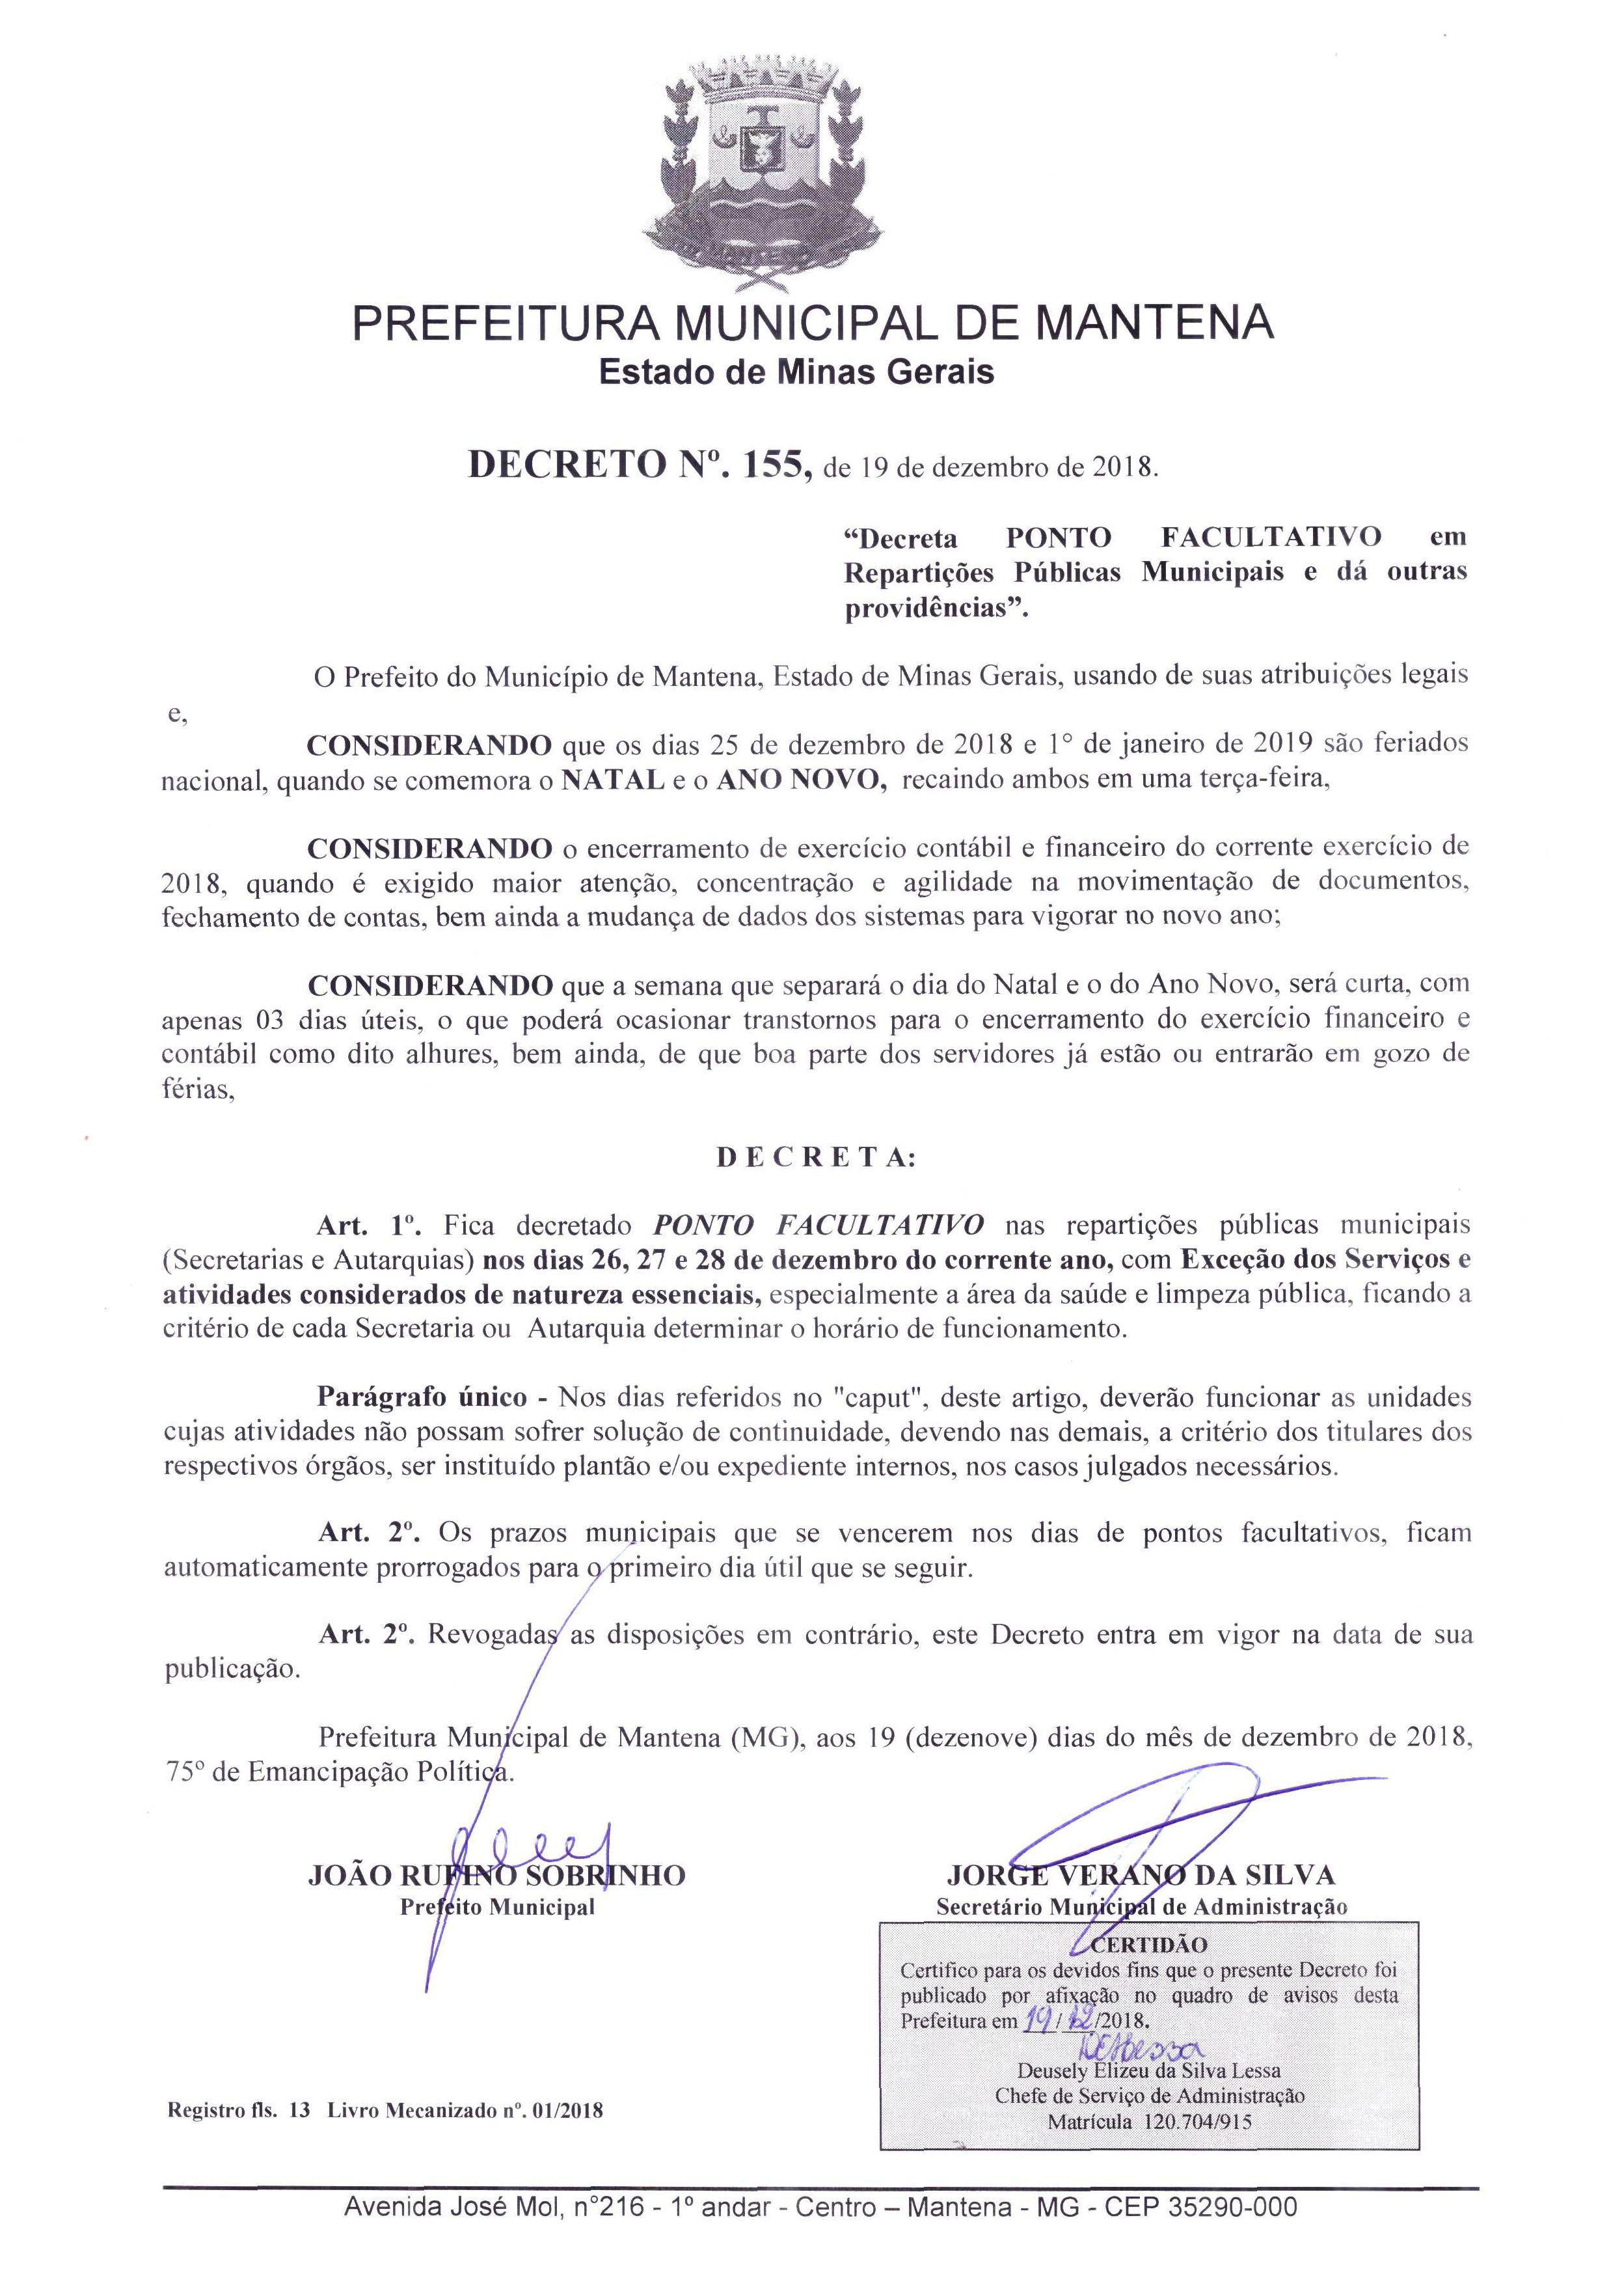 Prefeitura decreta ponto facultativo nos dias 26, 27 e 28 de dezembro –  Prefeitura Municipal de Mantena